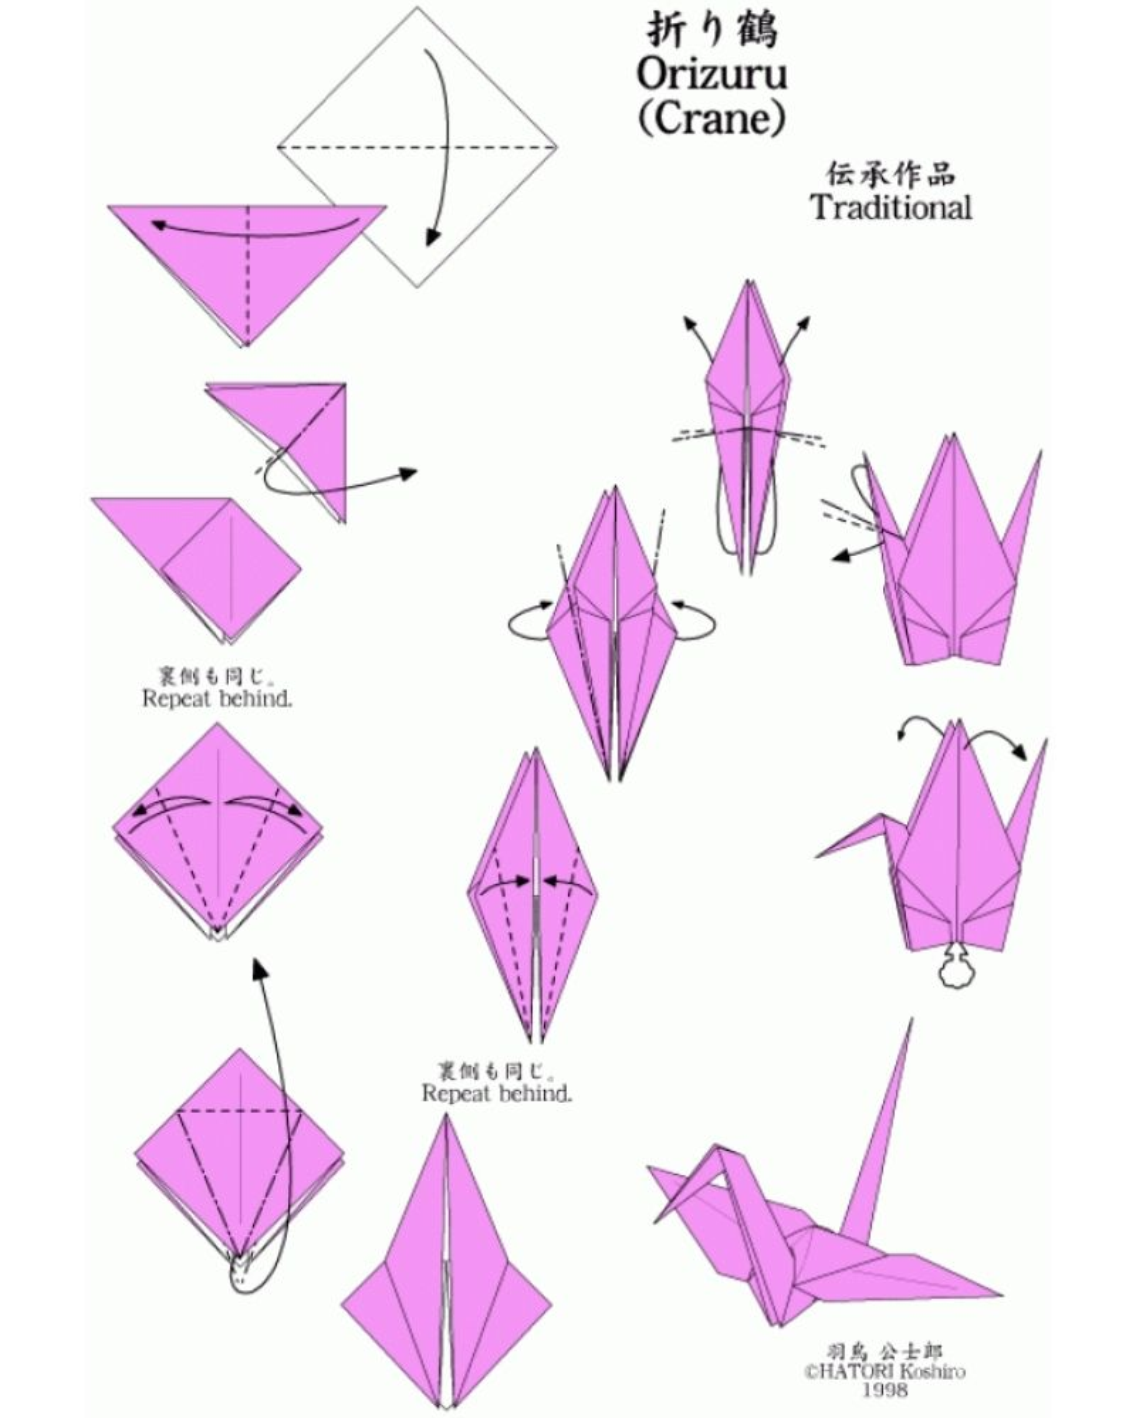 Оригами журавлик способы. Журавлик из бумаги схема складывания. Журавлик оригами из бумаги схемы для детей. Схема складывания журавлика из бумаги пошаговая. Оригами из бумаги журавль пошаговая схема для детей.